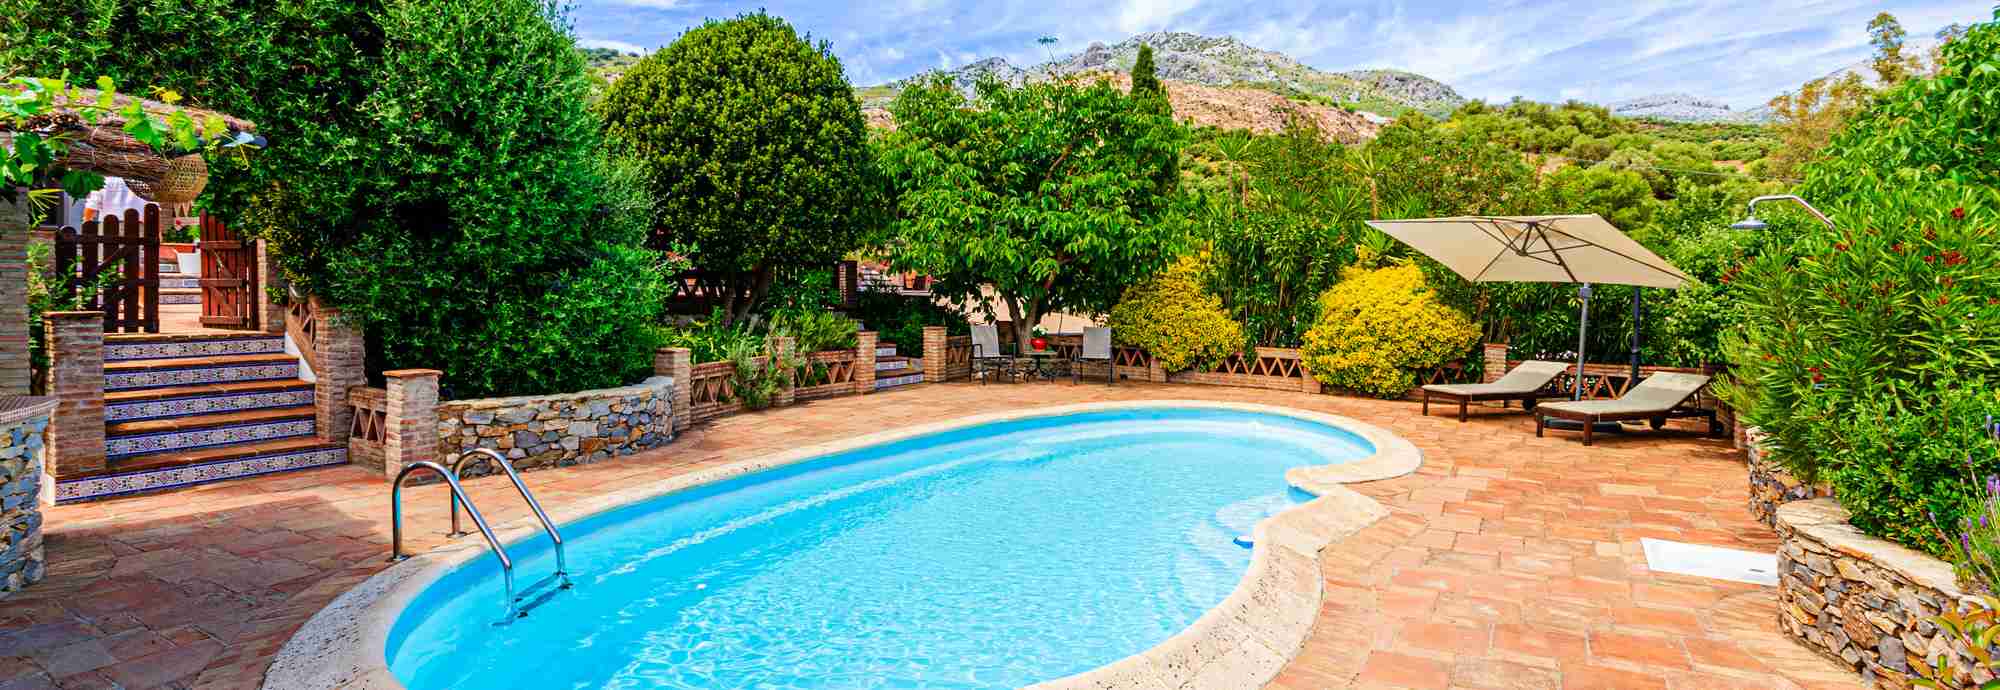 Un lugar ideal para unas vacaciones relajantes en el corazón de la Serranía de Ronda